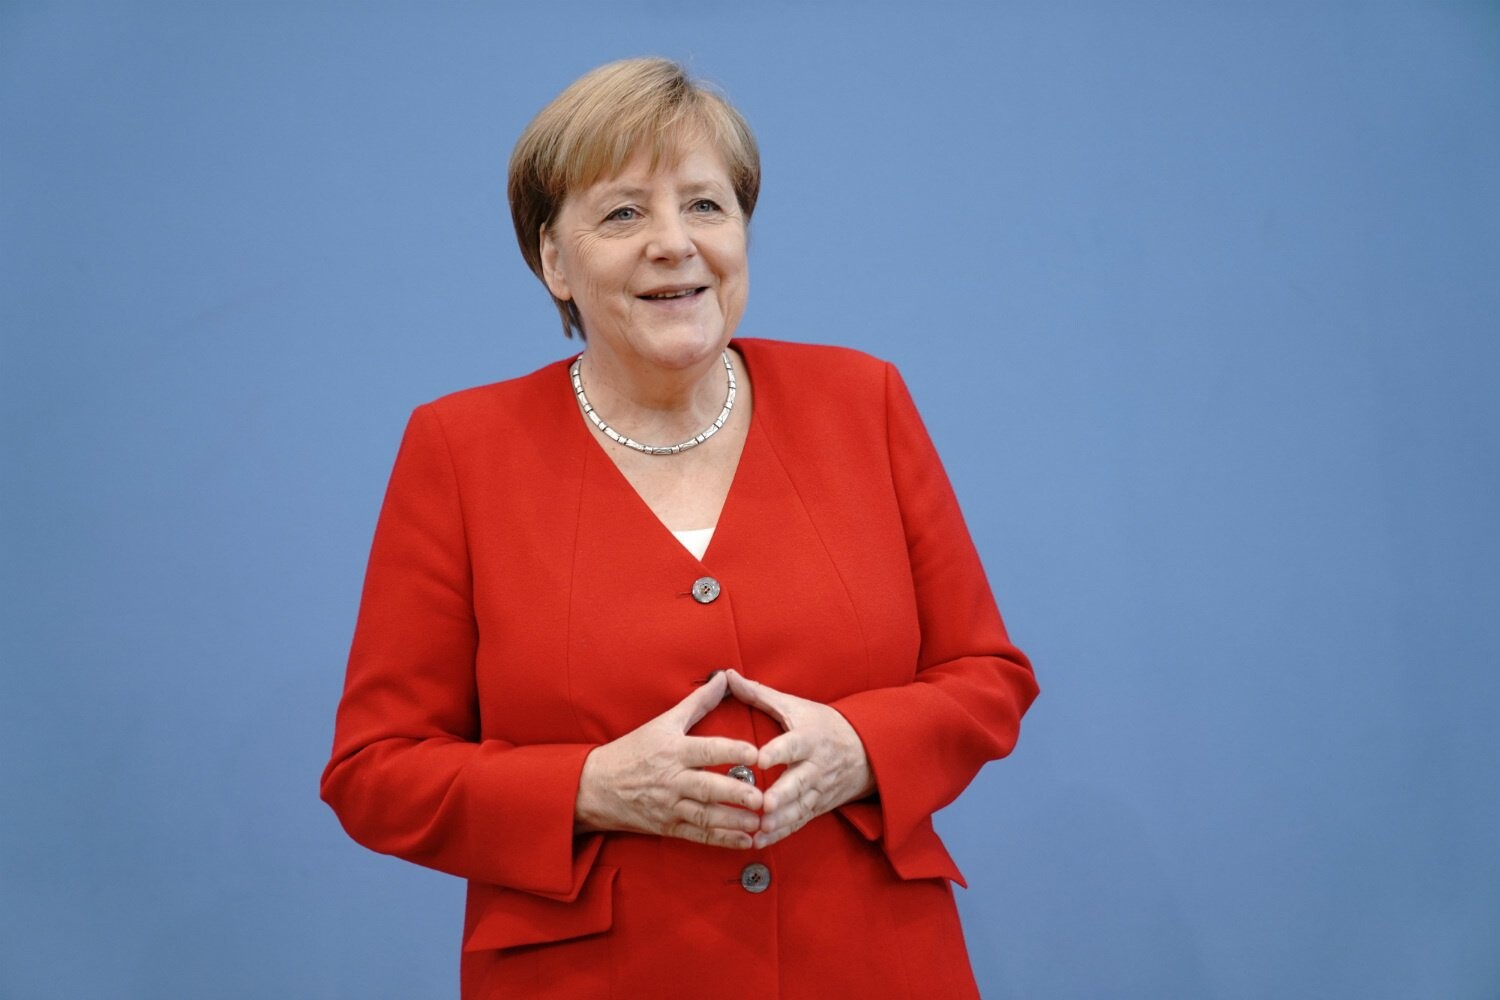 Šestnáct let Angely Merkel. Šestnáct věcí, které z ní udělaly nejvlivnější političku současnosti